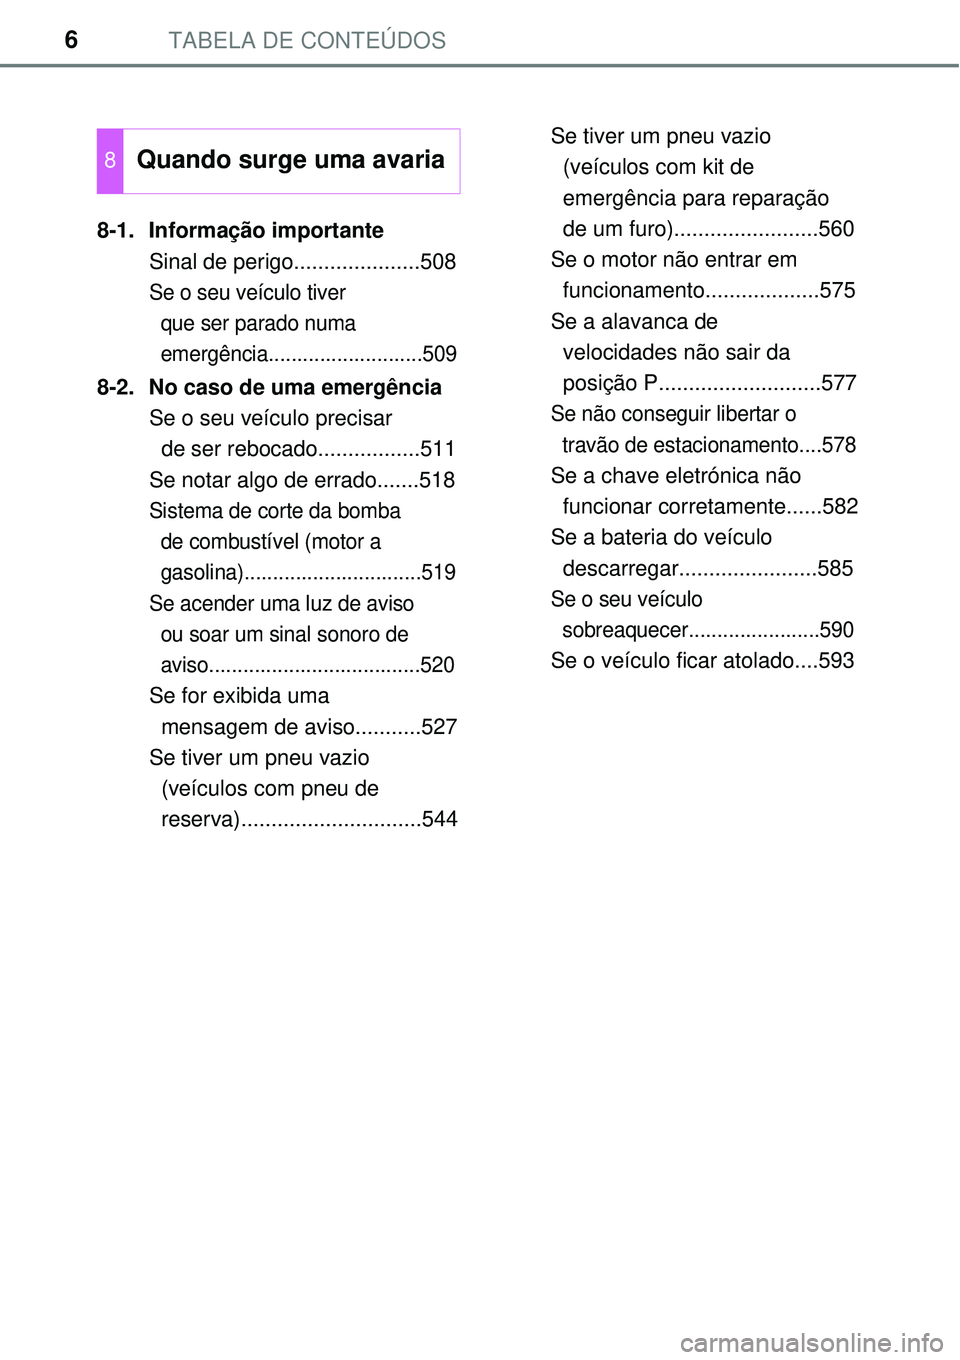 TOYOTA AVENSIS 2015  Manual de utilização (in Portuguese) TABELA DE CONTEÚDOS6
8-1. Informação importante
Sinal de perigo.....................508
Se o seu veículo tiver 
  que ser parado numa 
  emergência...........................509
8-2. No caso de u